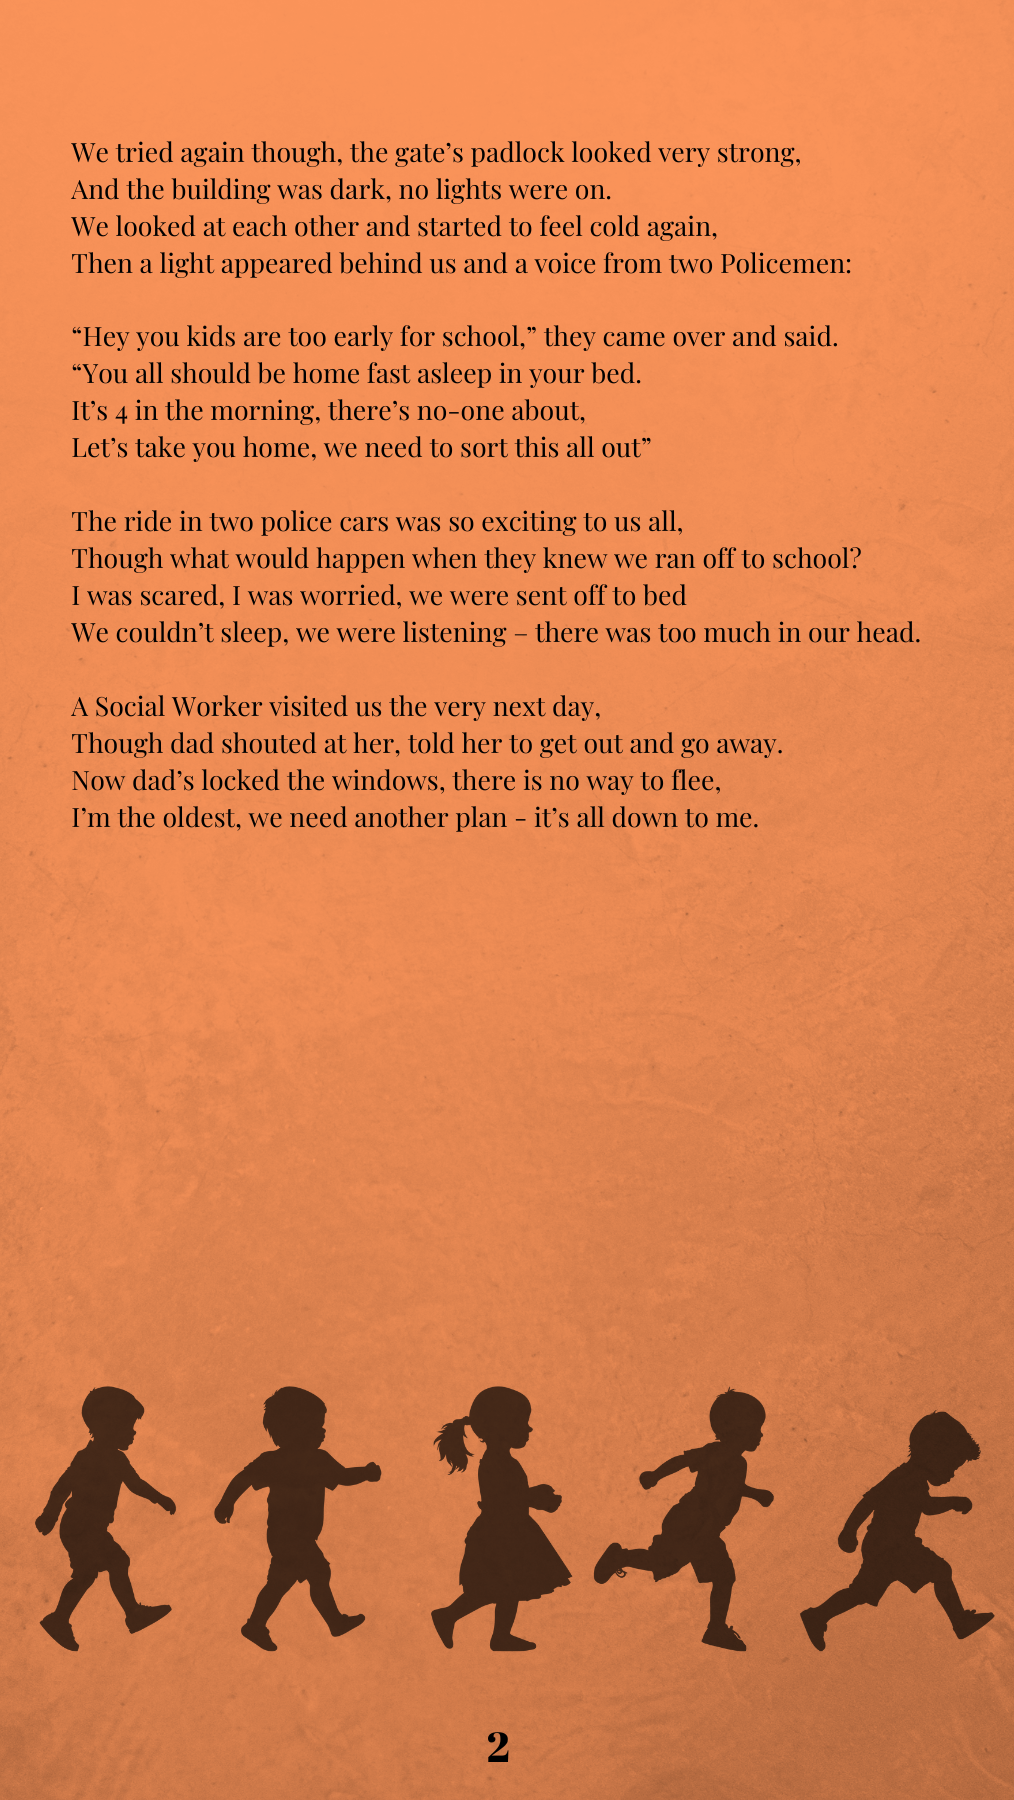 Poem by Rosie R